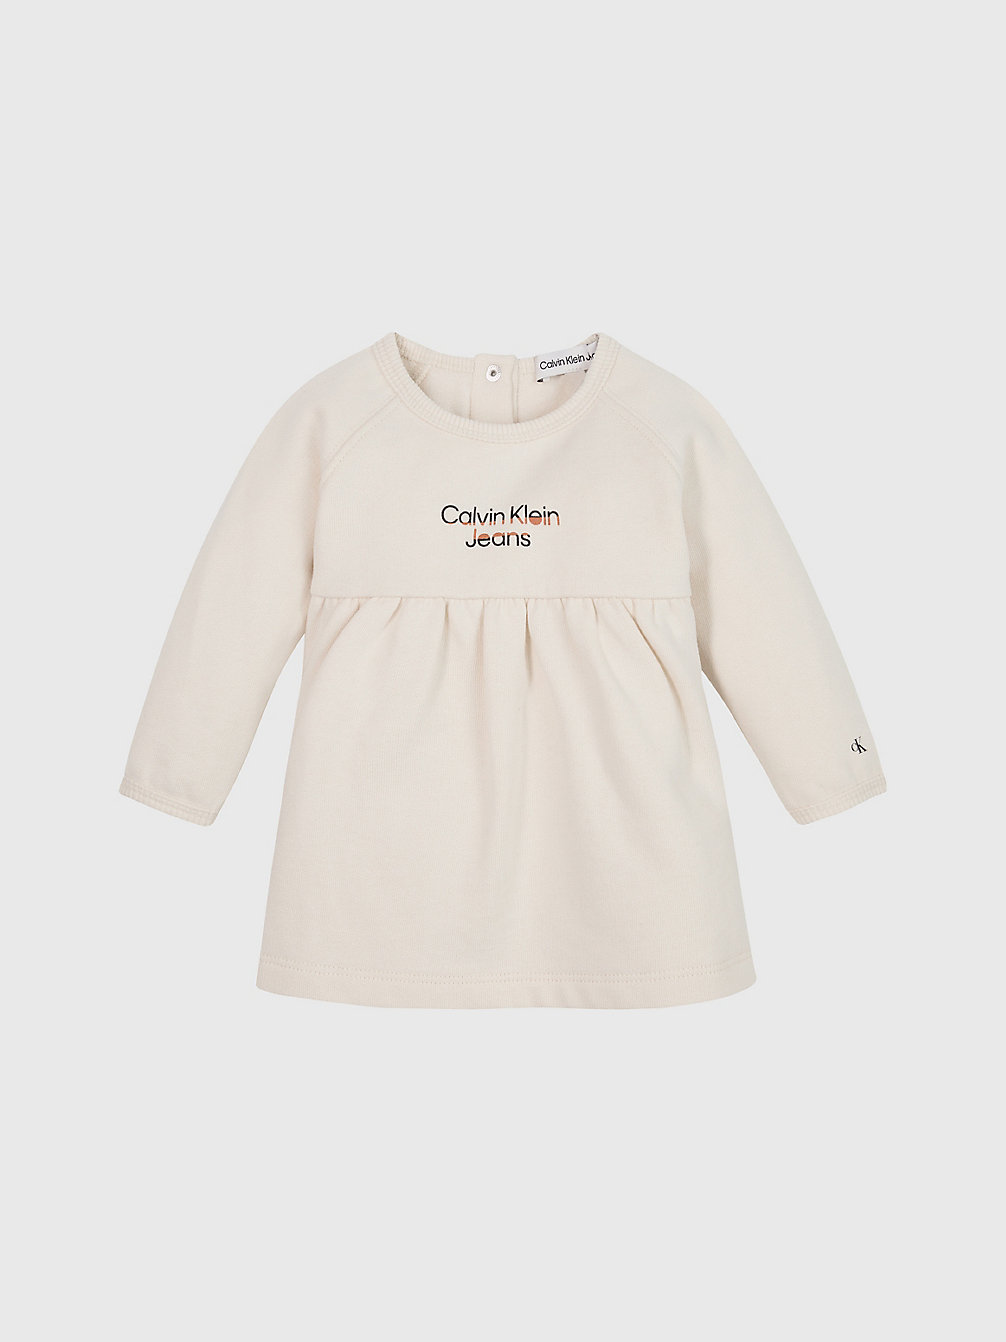 WHITECAP GRAY Fleece Newborn-Jurk Met Logo undefined undefined Calvin Klein